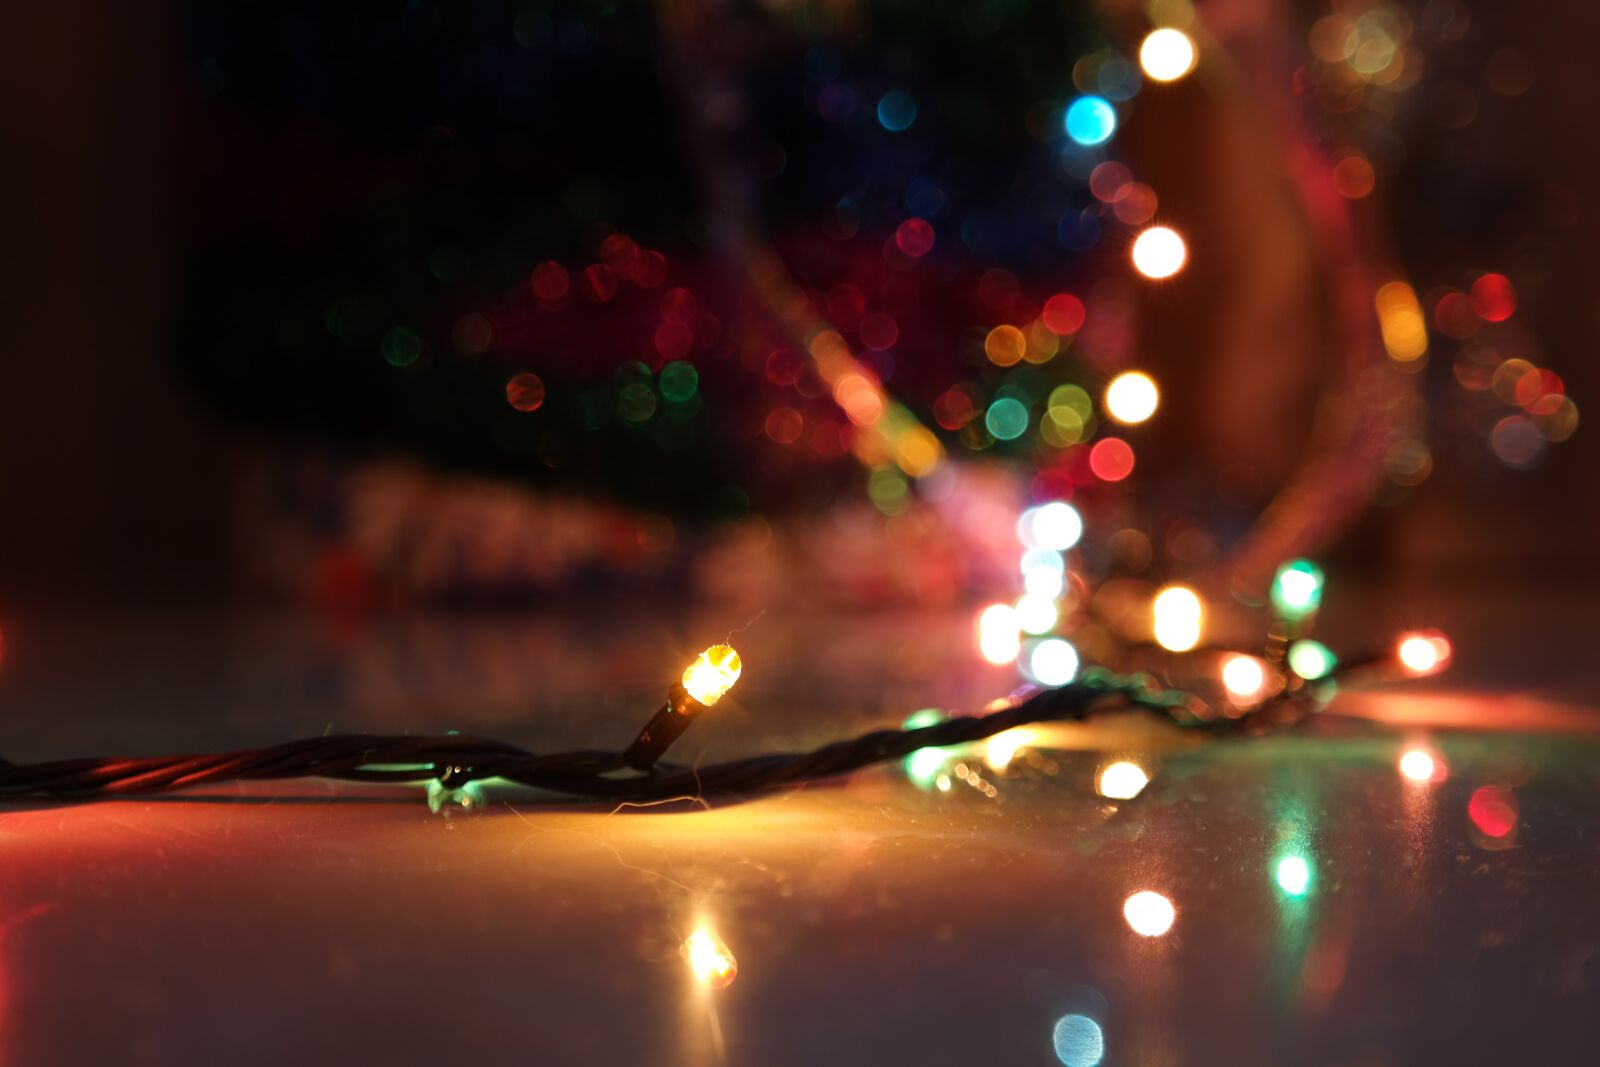 Samsung NX300 sample photo. Christmas lights, decor, xmas photography